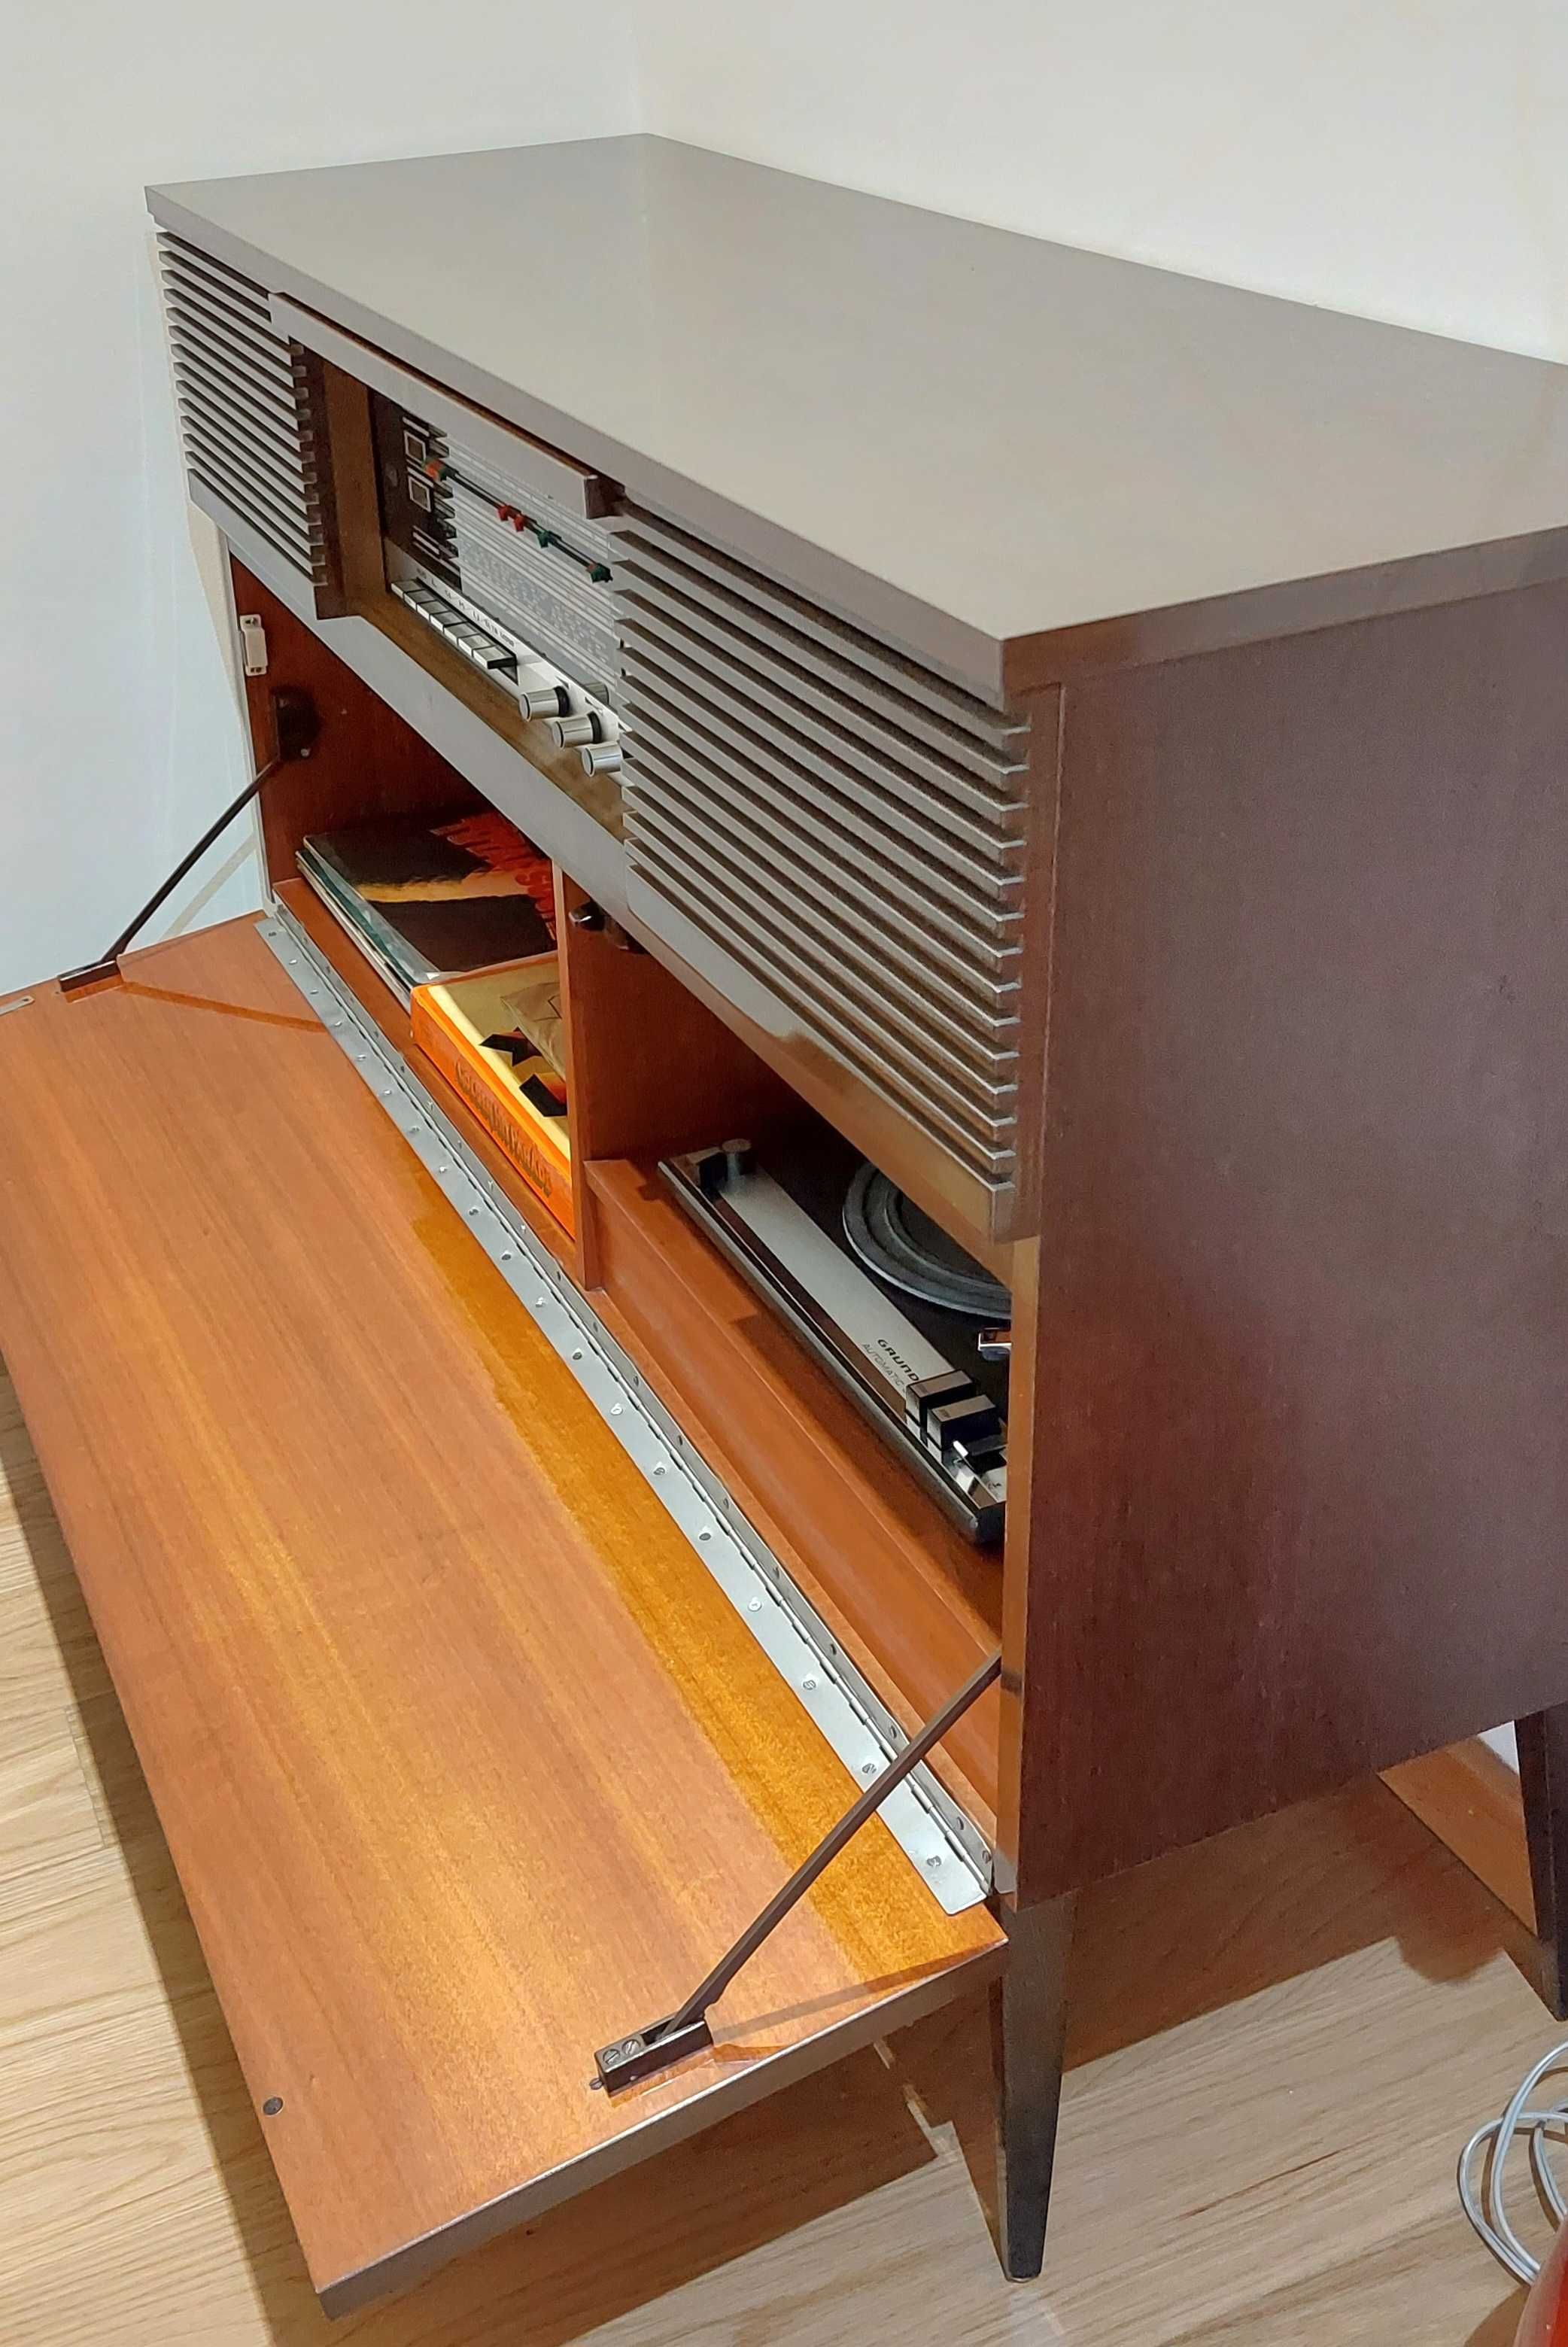 Consola vintage com rádio e gira discos da Grundig